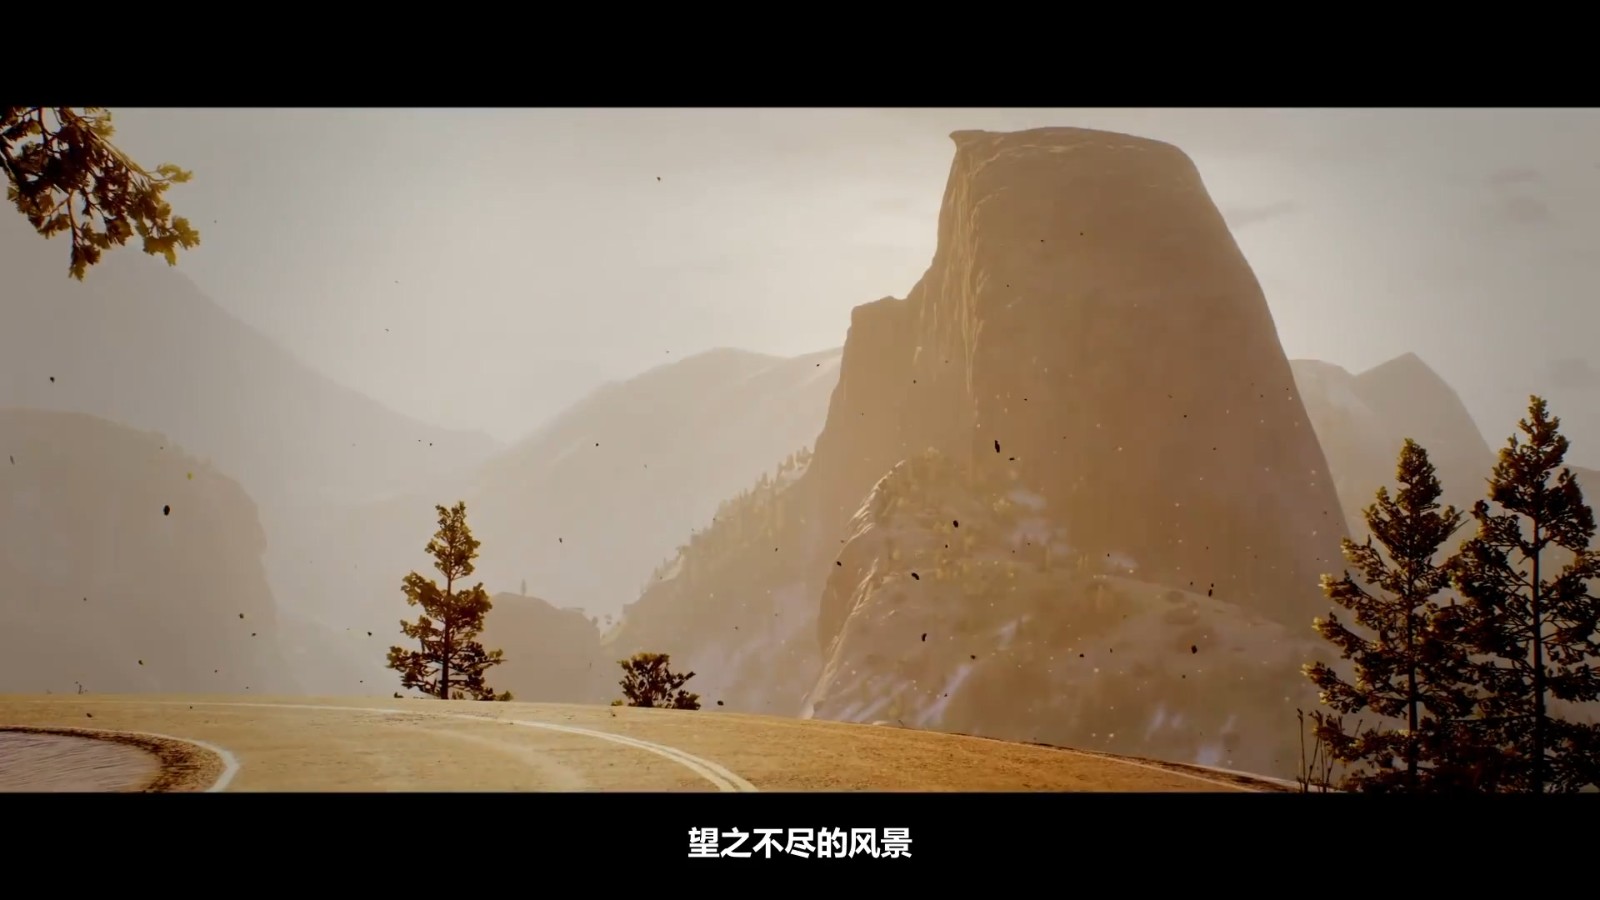 育碧多人户外运动游戏《极限国度》中文预告片